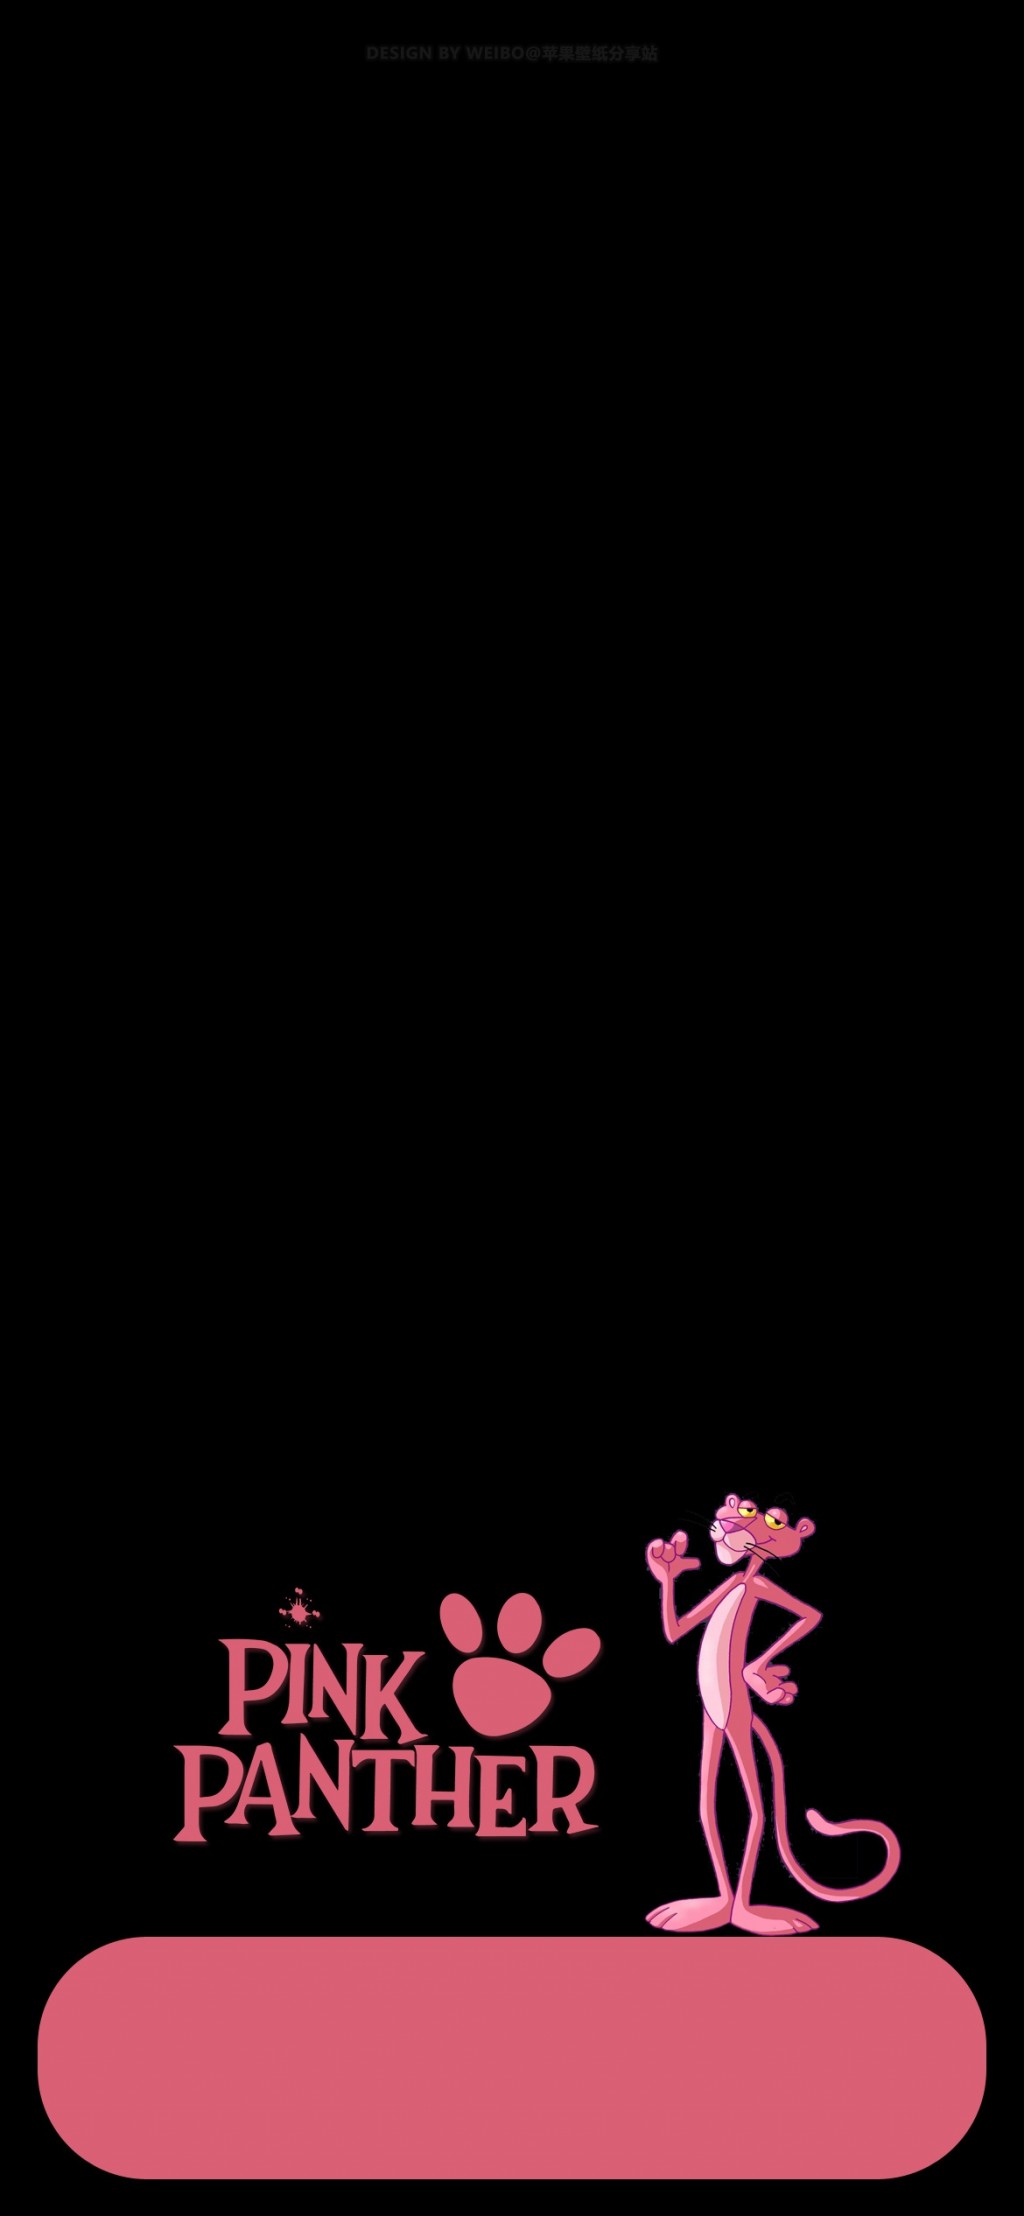 粉红豹粉色可爱卡通插画手机壁纸